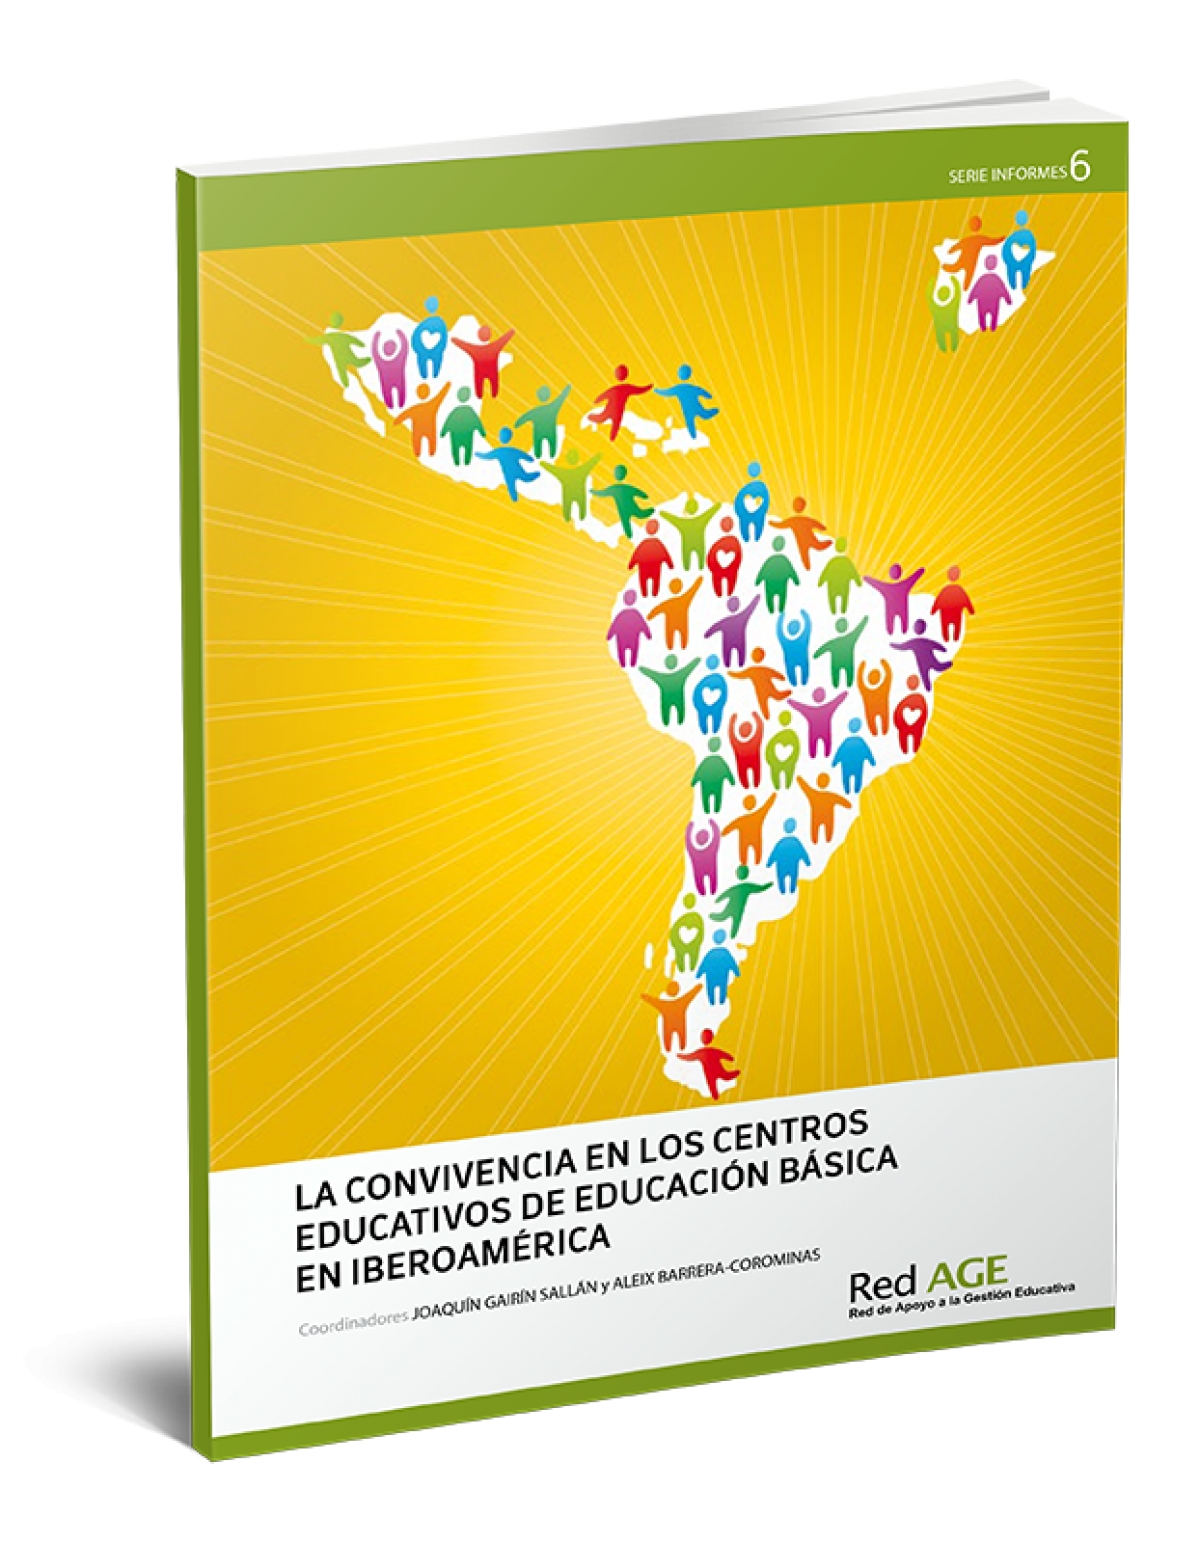 La convivencia en los centros de Educación Básica en Iberoamérica